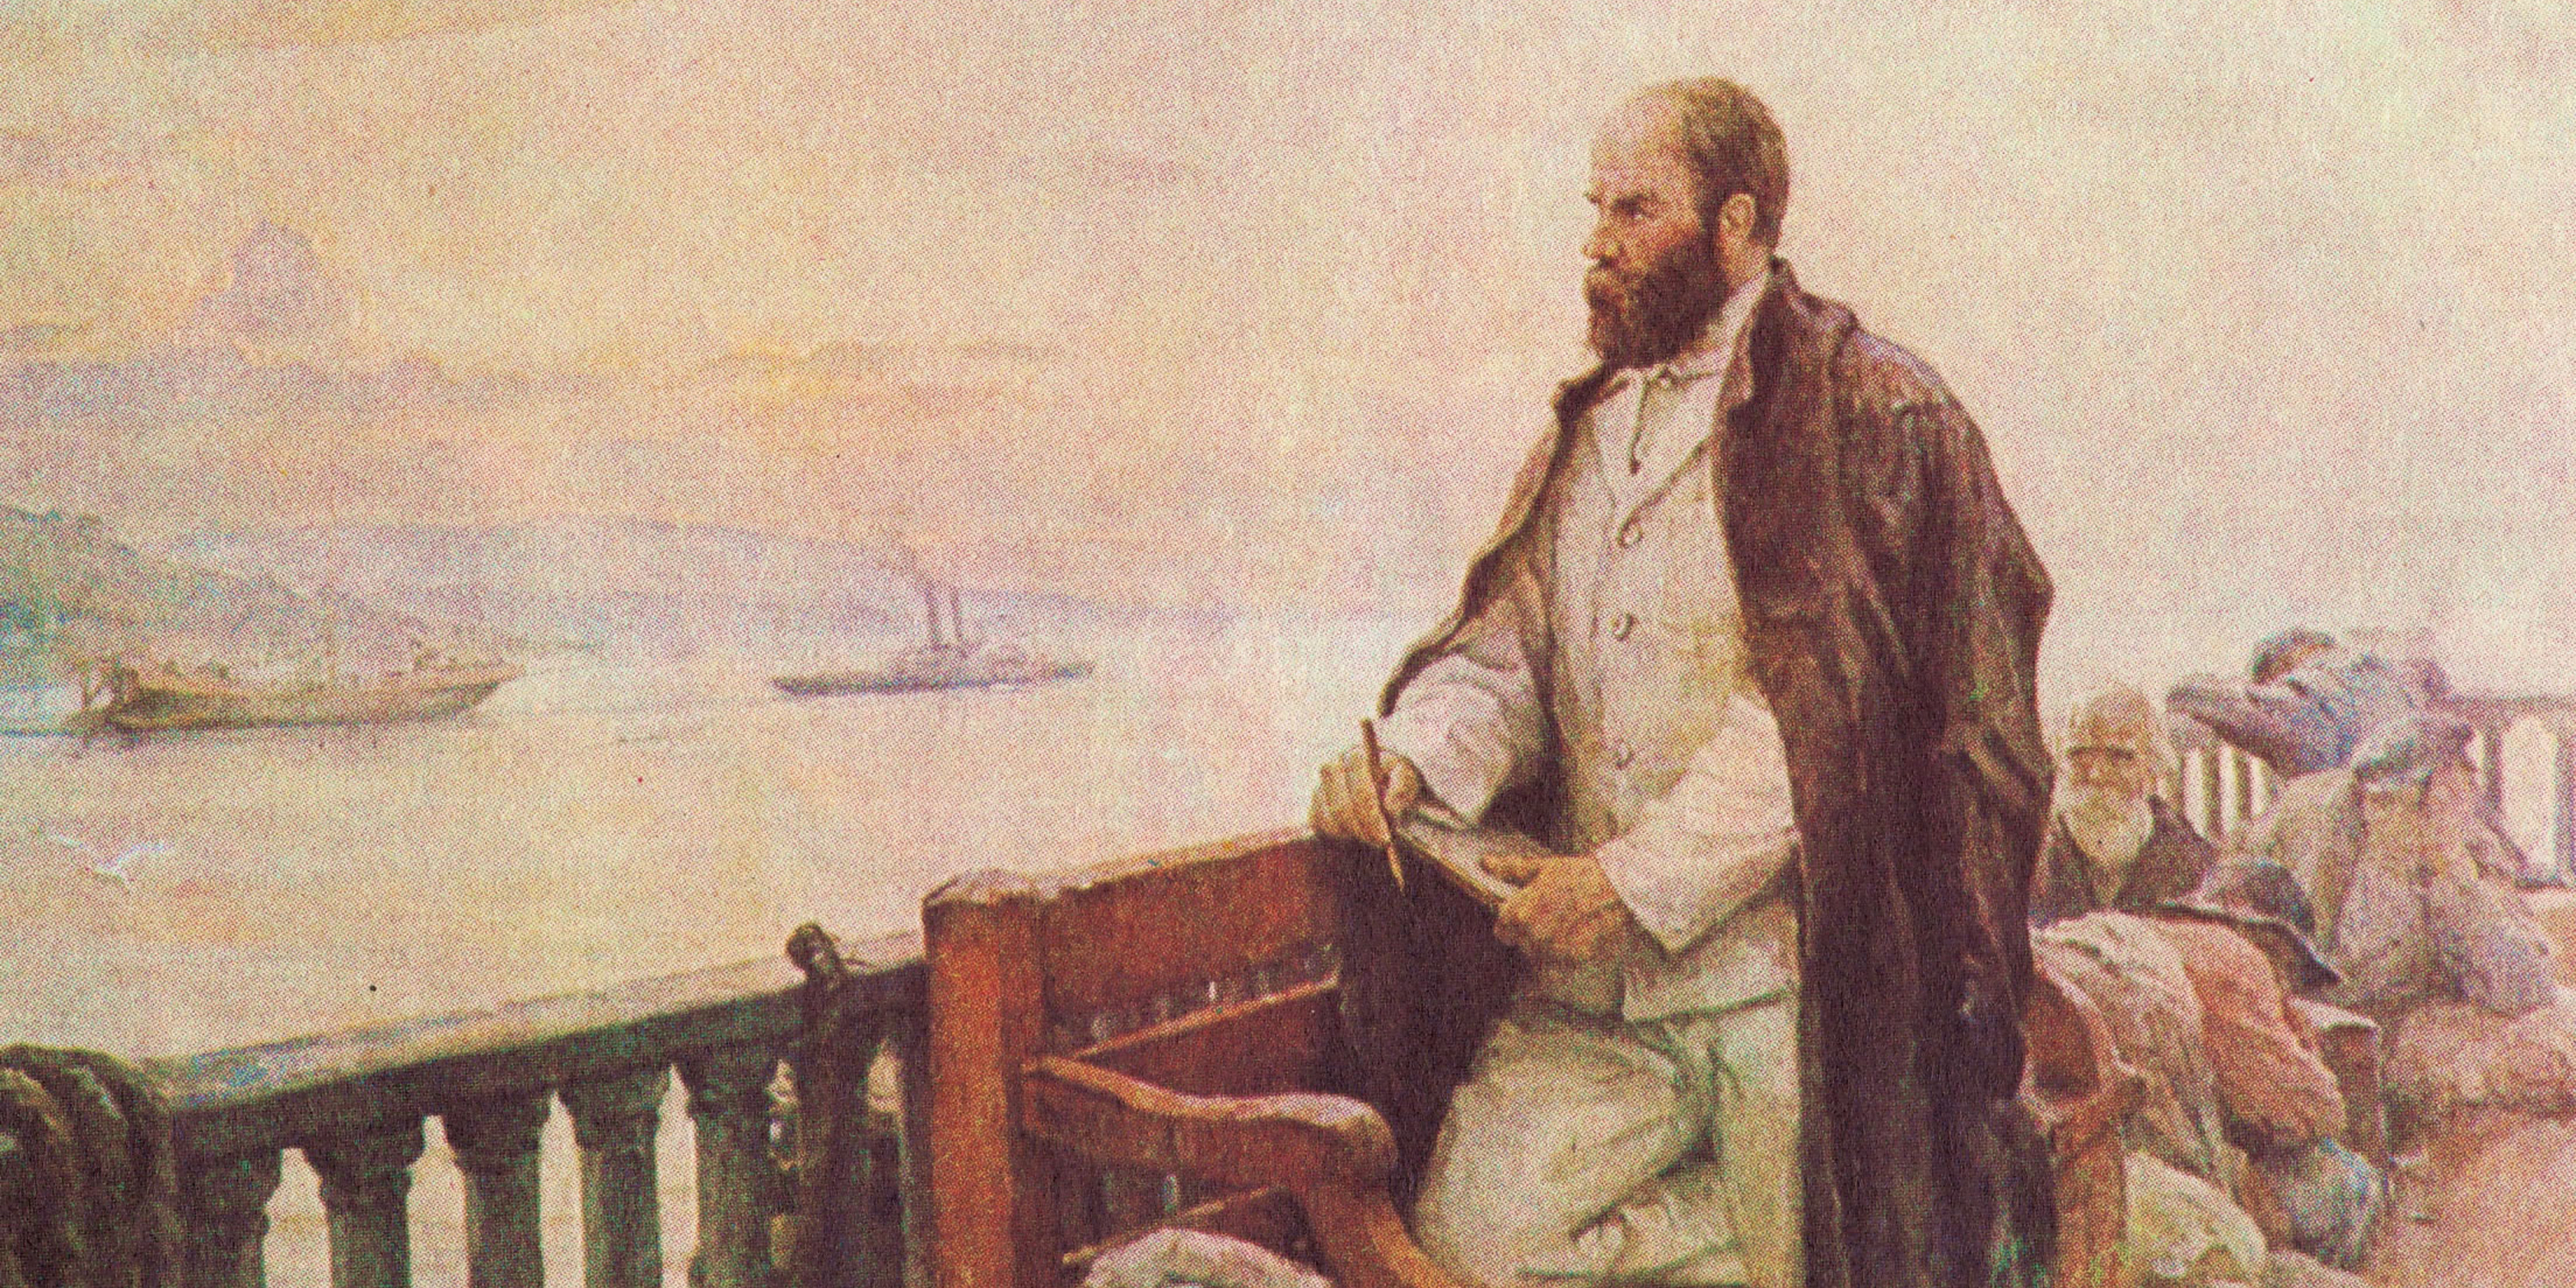 portrait of Shevchenko by Ukrainian artist Ilia Shulha, titled Taras Shevchenko Returning from Exil by Boat.